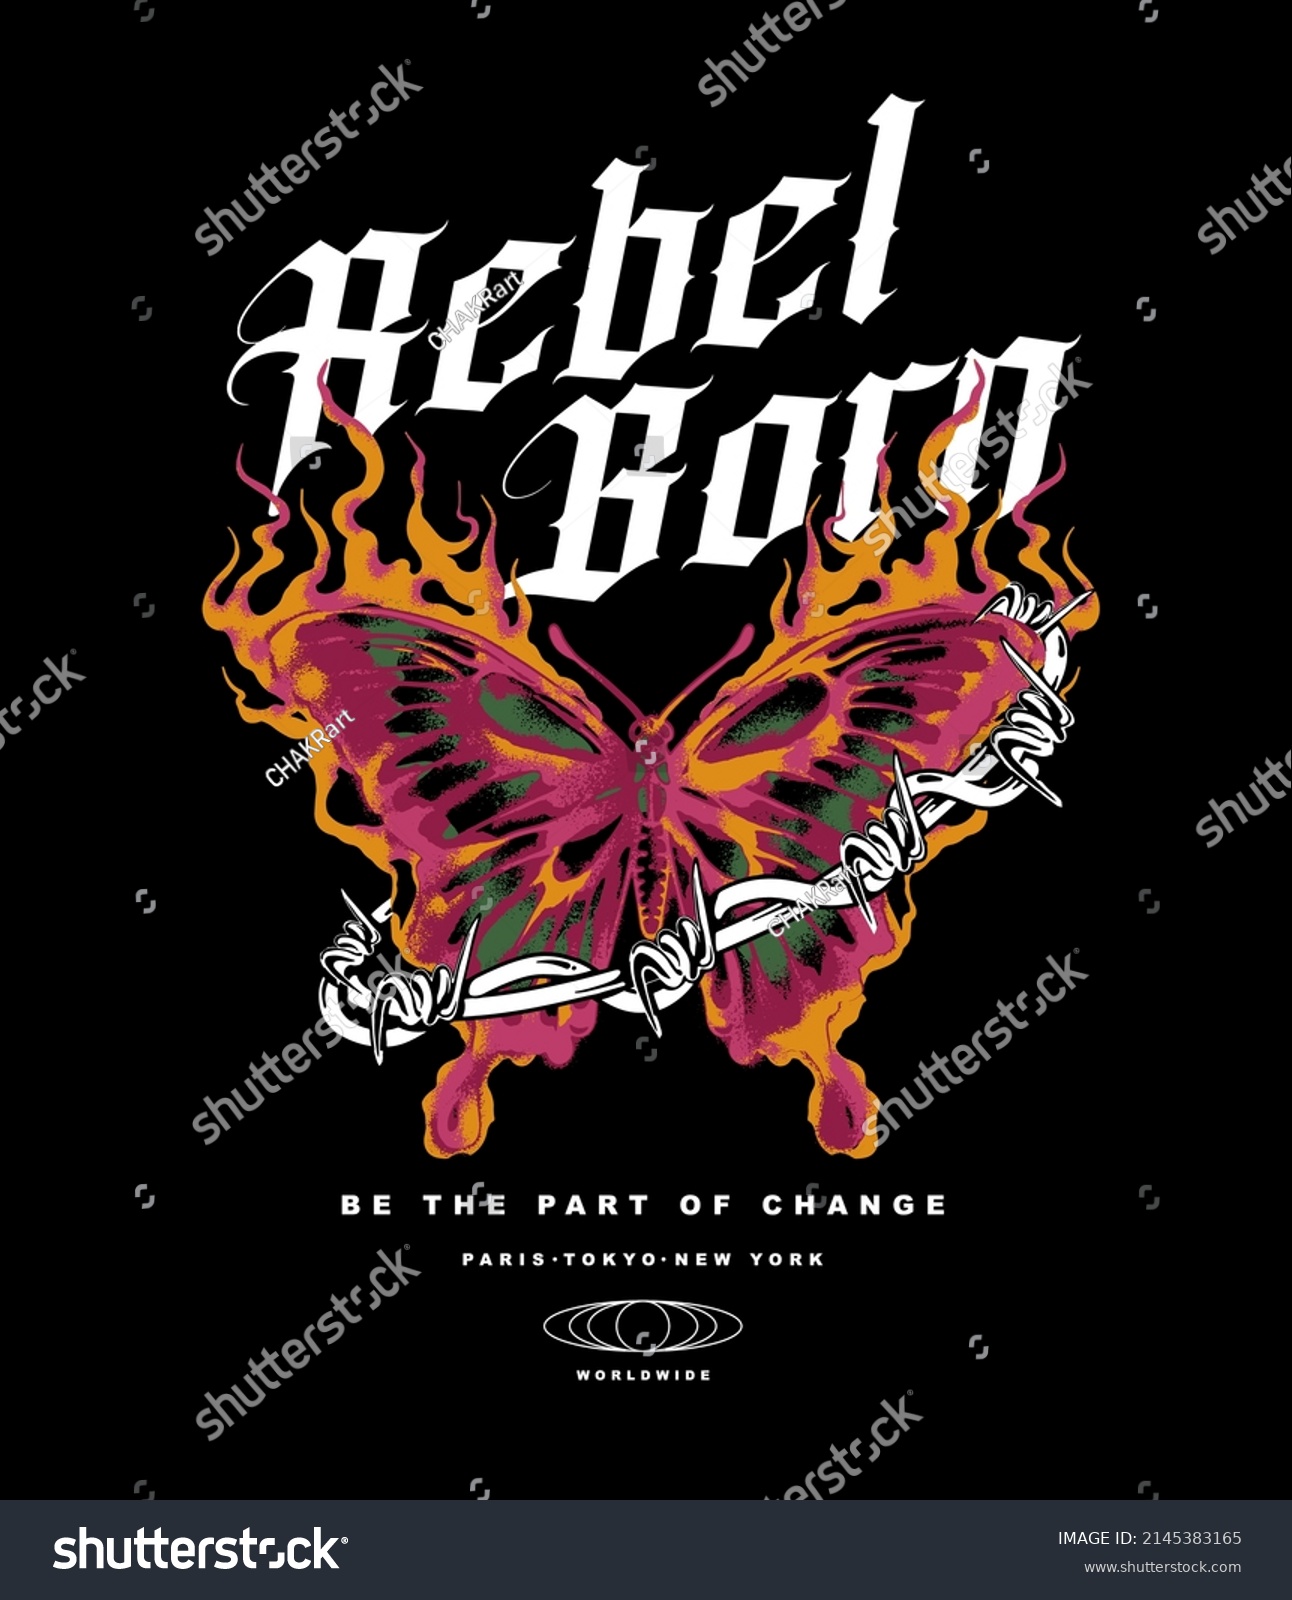 Rebel Born Slogan Print Design Burning Stock Vector (Royalty Free ...